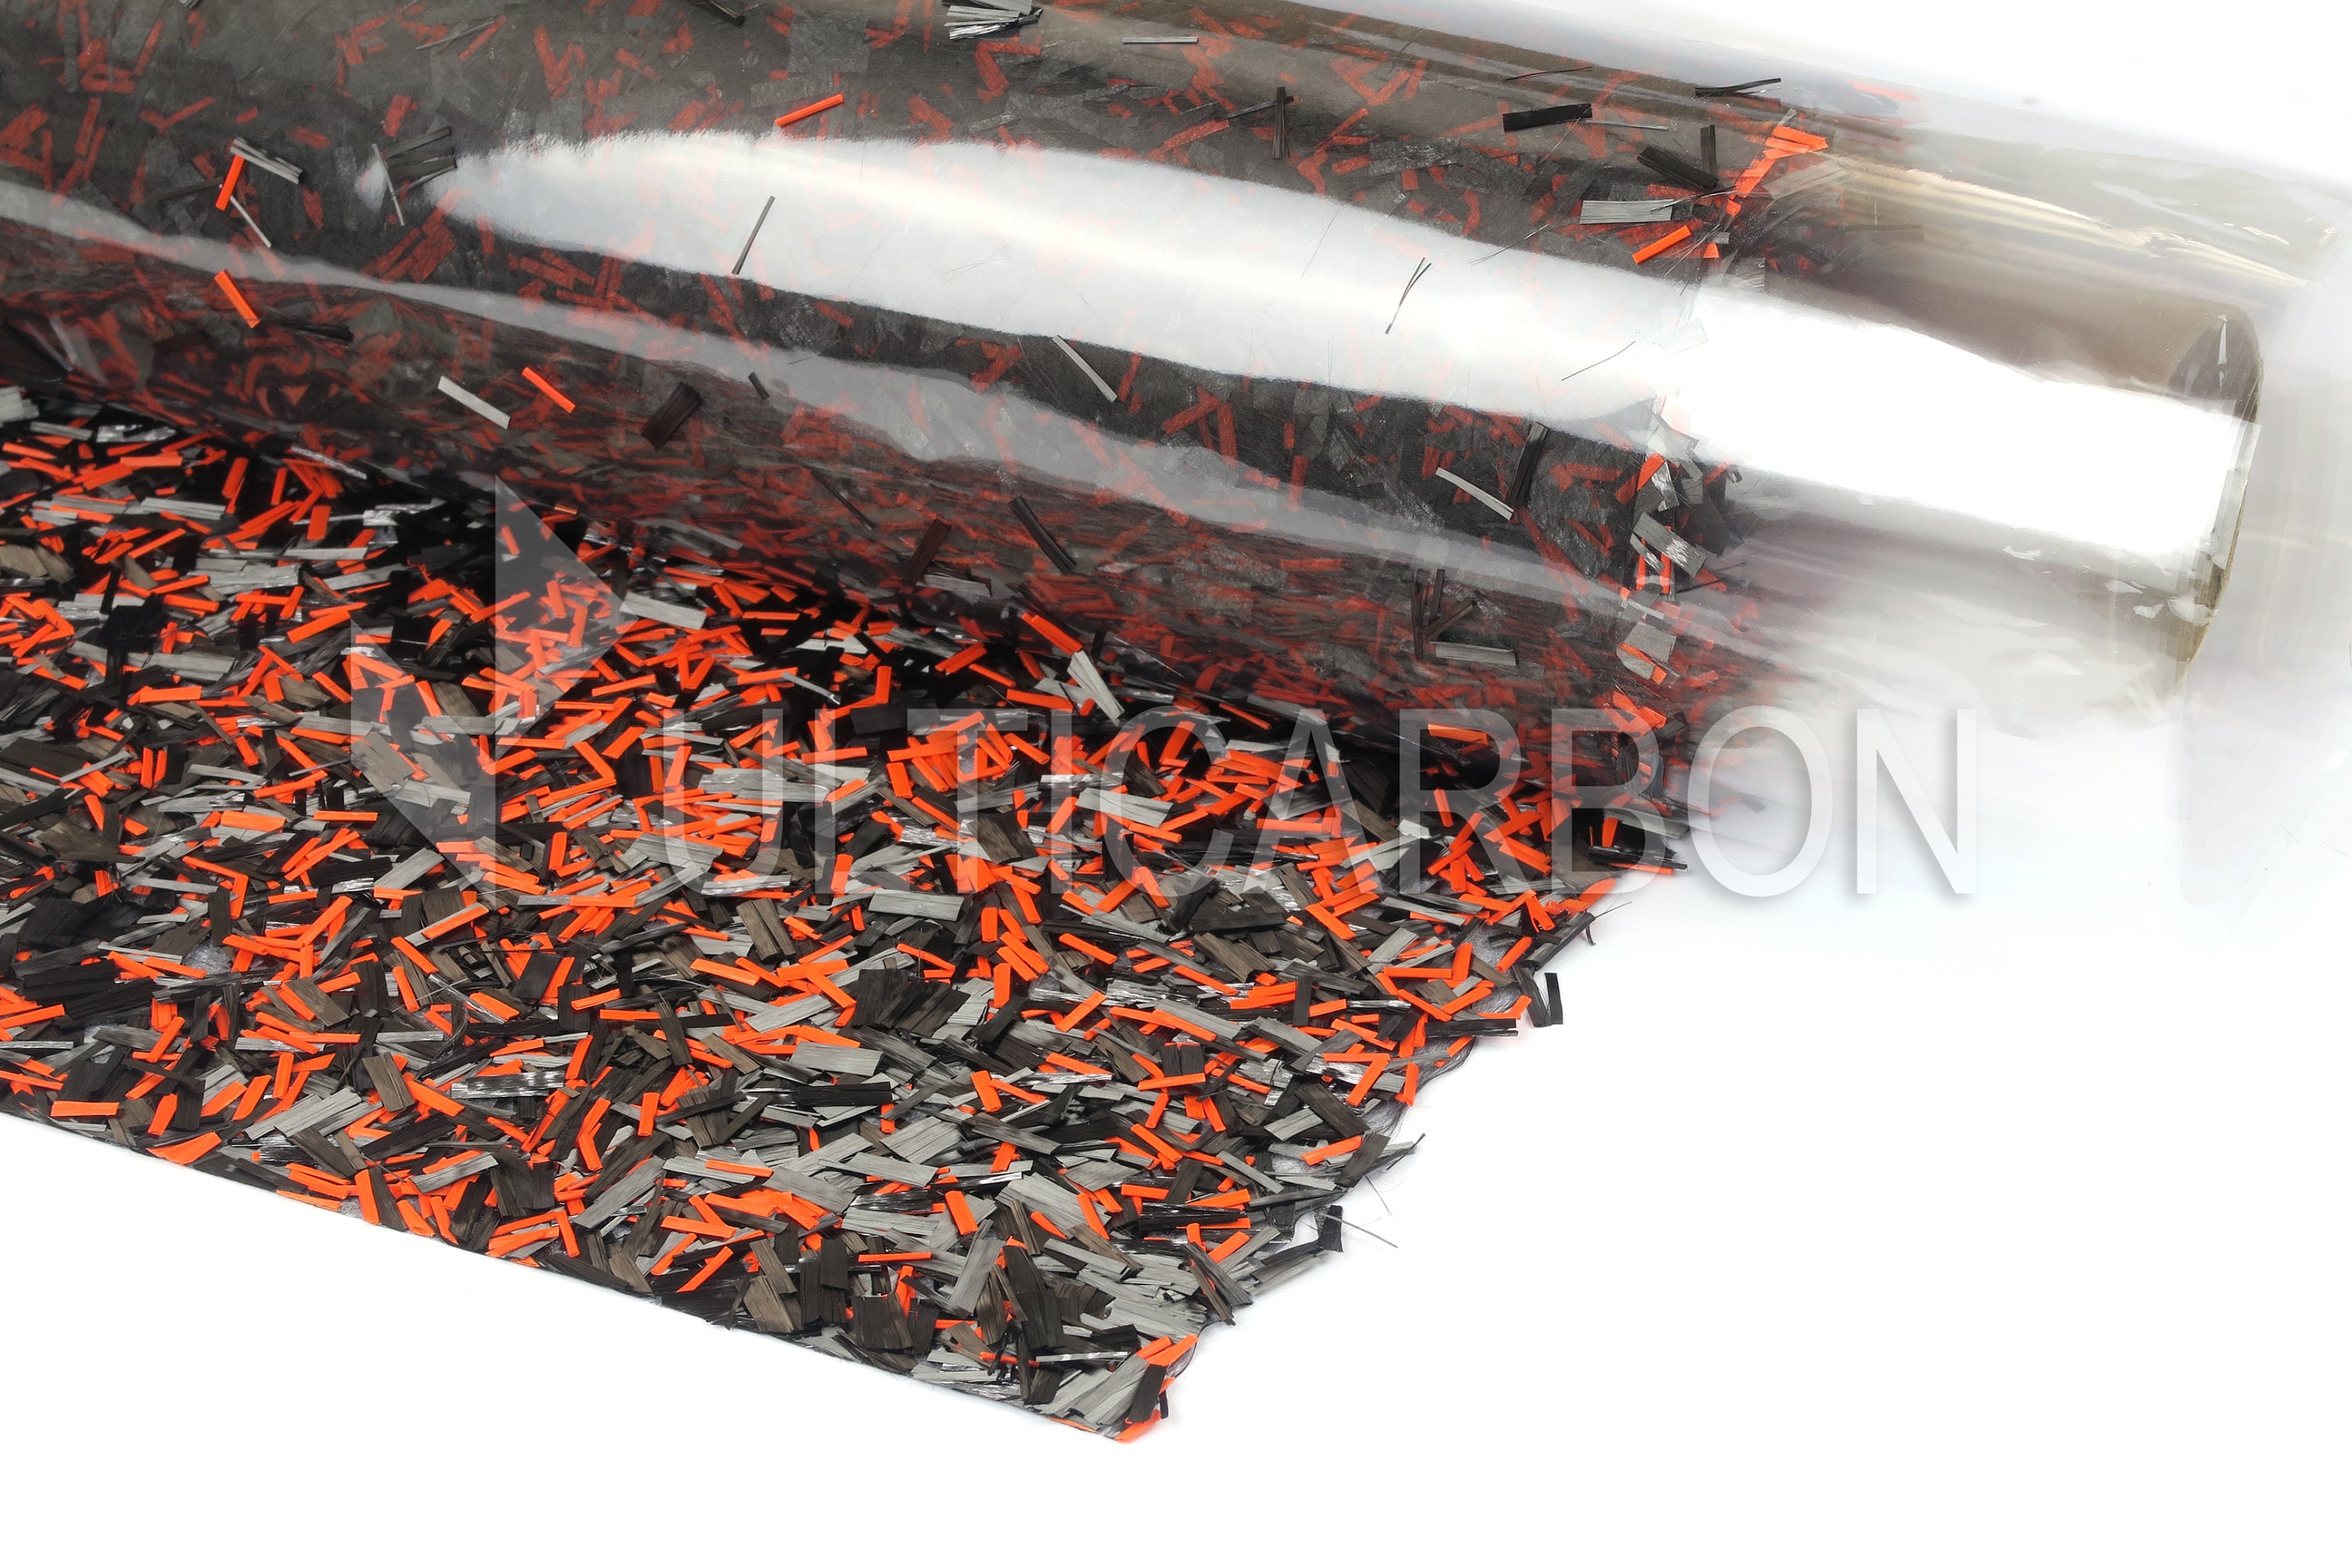 Tissu en fibre de carbone forgé ForgeTEX™ 6 x 8/15cm x 20cm -  France